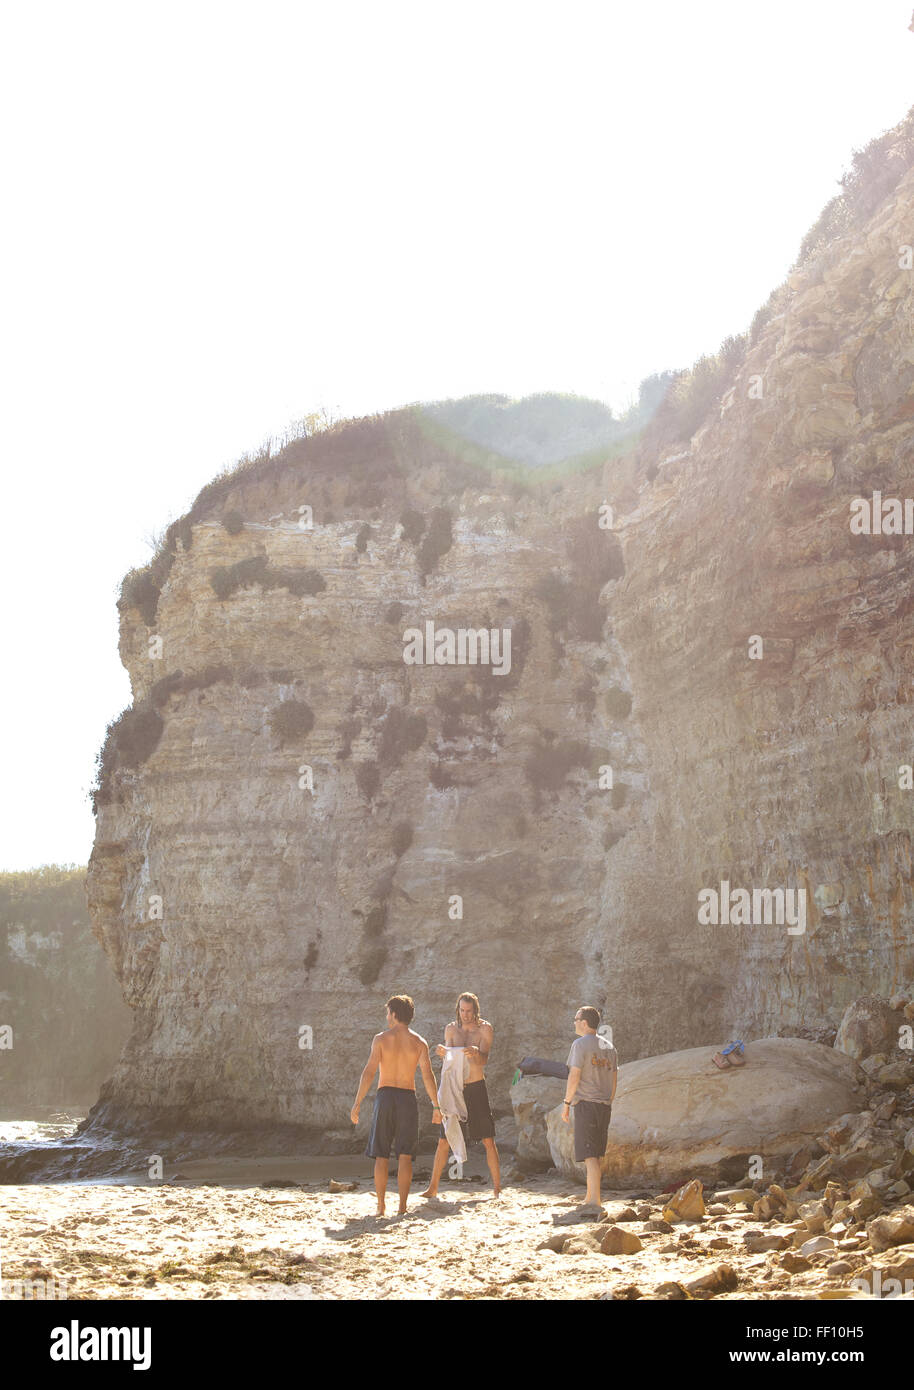 Trois hommes debout sur une plage ensoleillée avec la falaise en arrière-plan, un homme met sur sa chemise. Banque D'Images